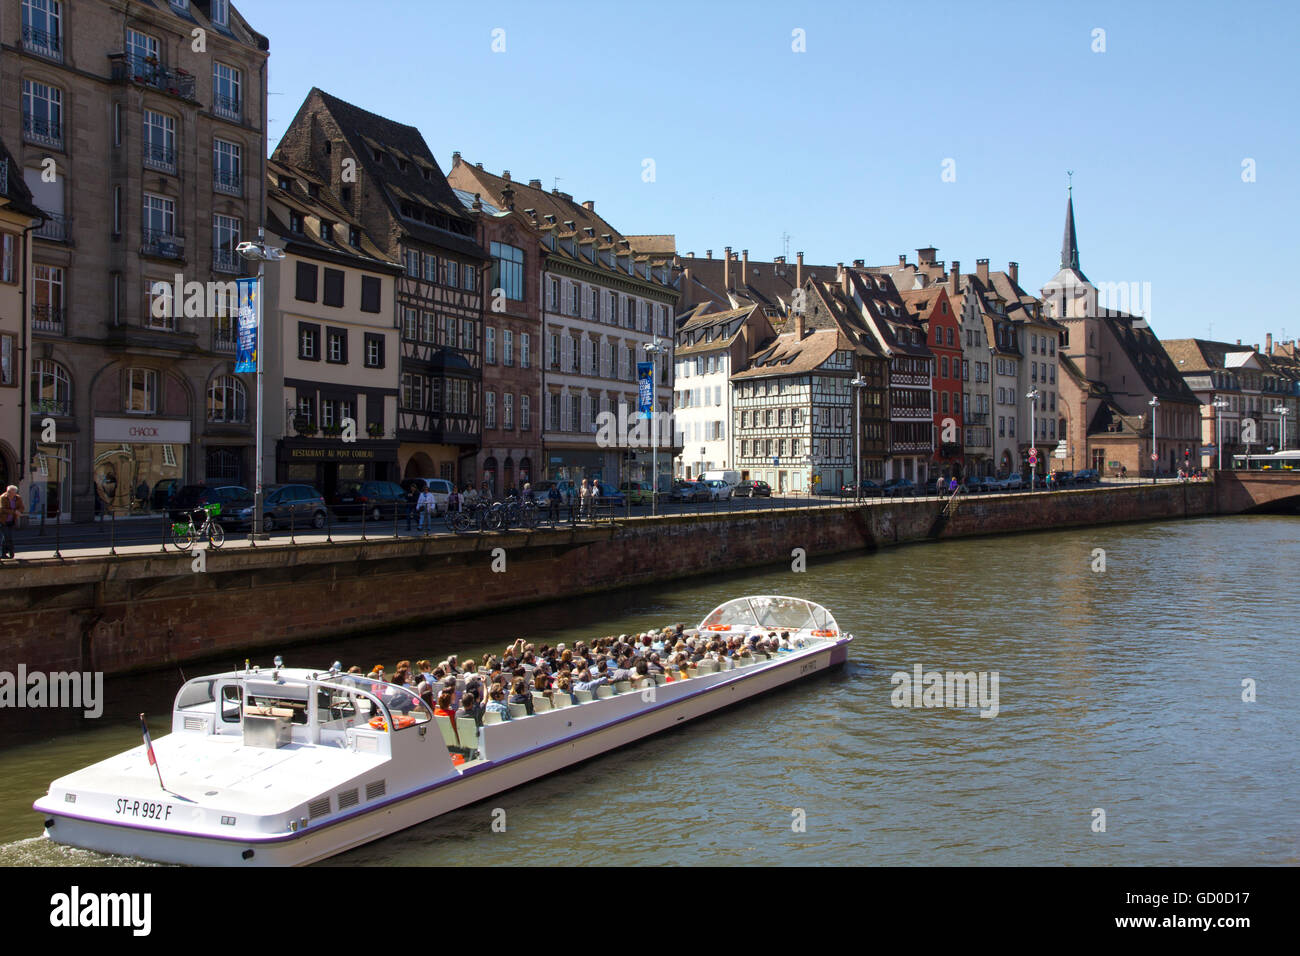 Ein Sightseeing-Boot gleitet entlang eines Kanals im Stadtteil Petite France in Straßburg, Frankreich. Stockfoto